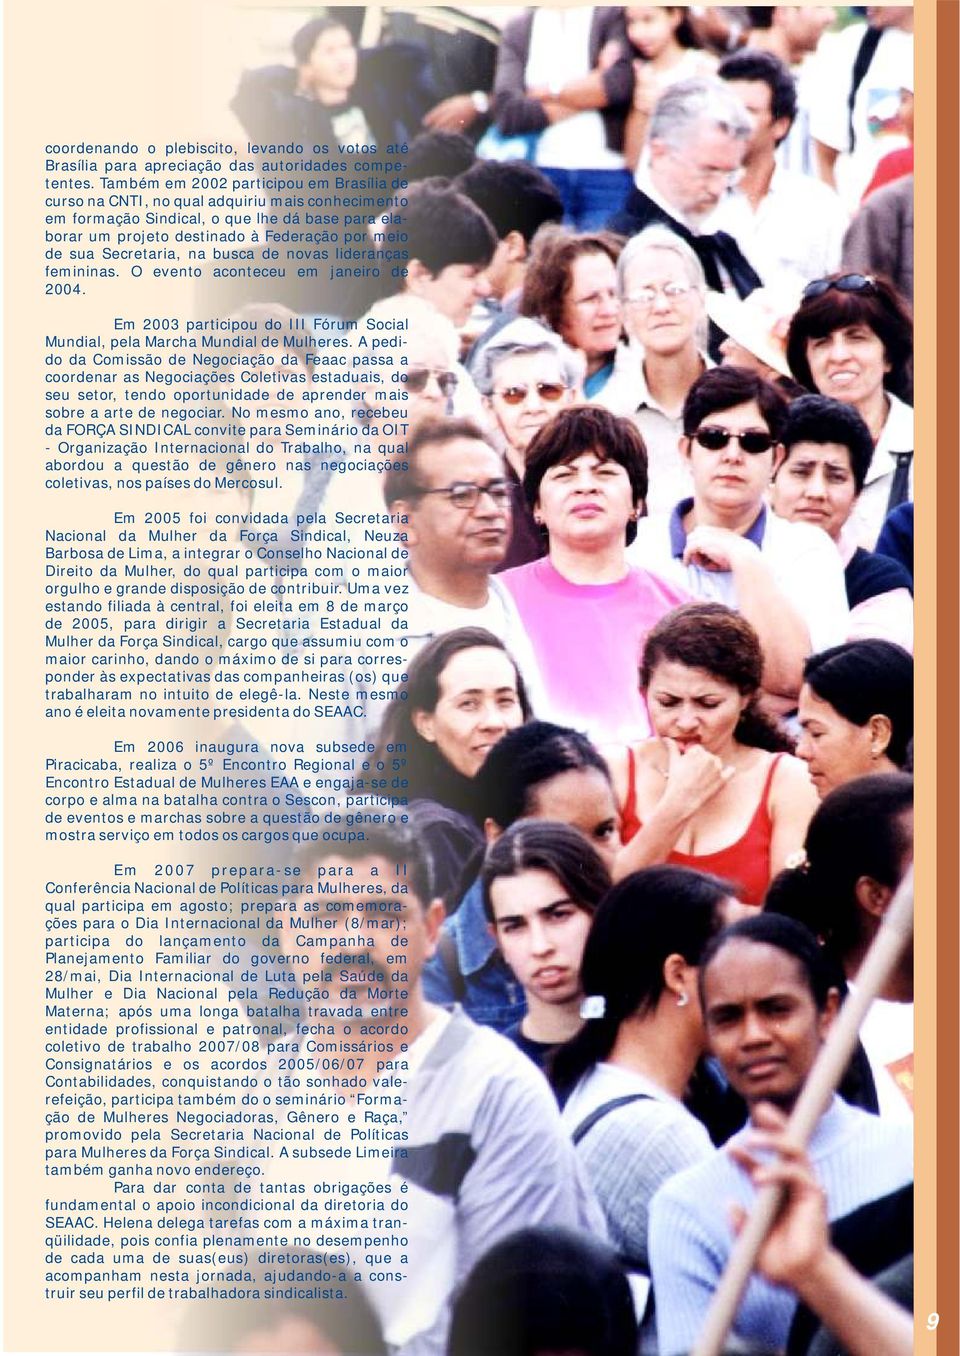 de nvas lideranças femininas. O event acnteceu em janeir de 2004. Em 2003 participu d III Fórum Scial Mundial, pela Marcha Mundial de Mulheres.